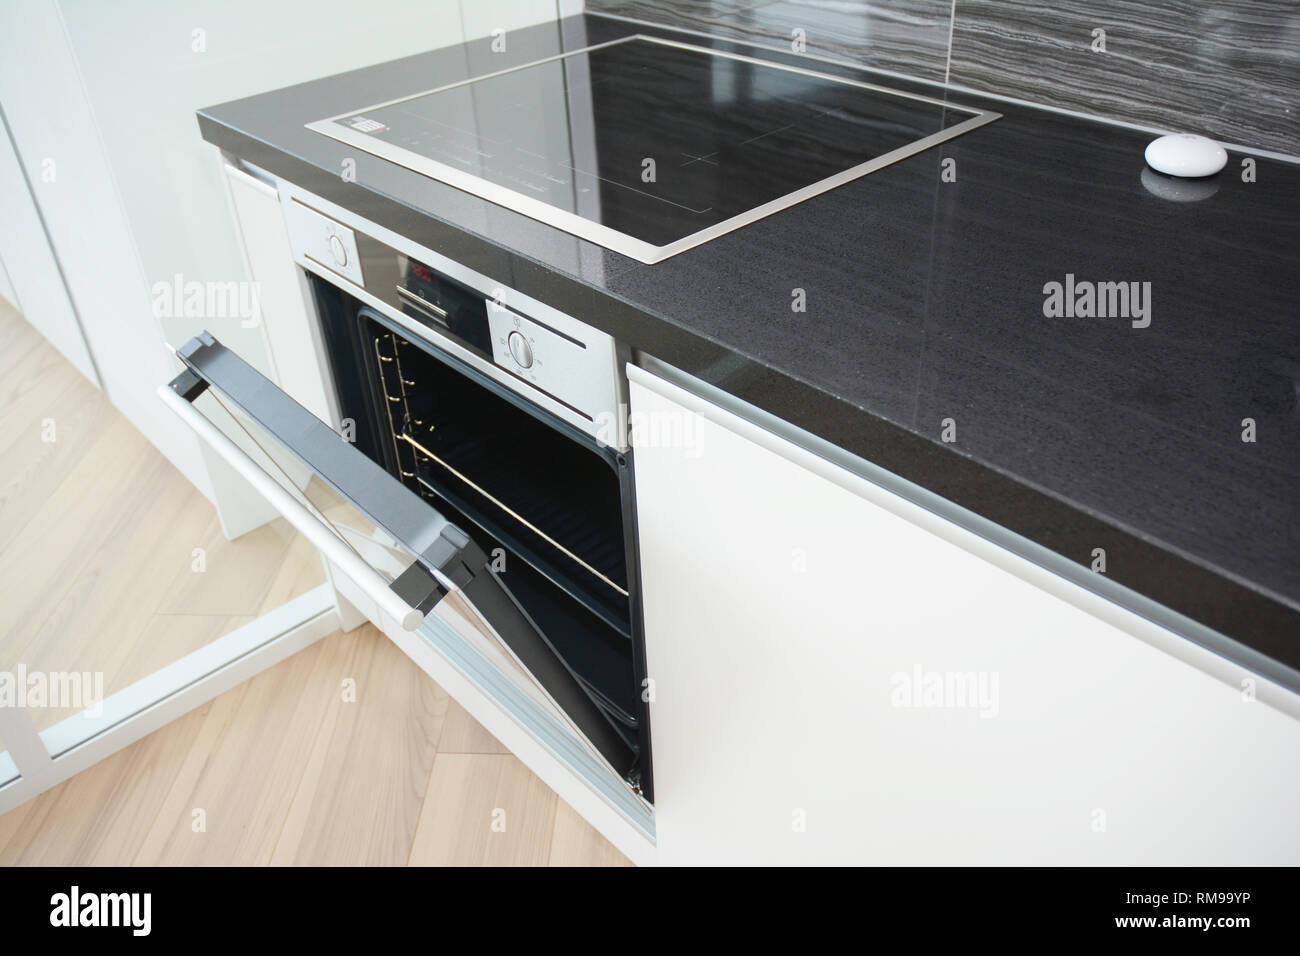 Moderne Küche Interieur mit schwarzen und weißen elektrischen Backofen, Herd  Stockfotografie - Alamy